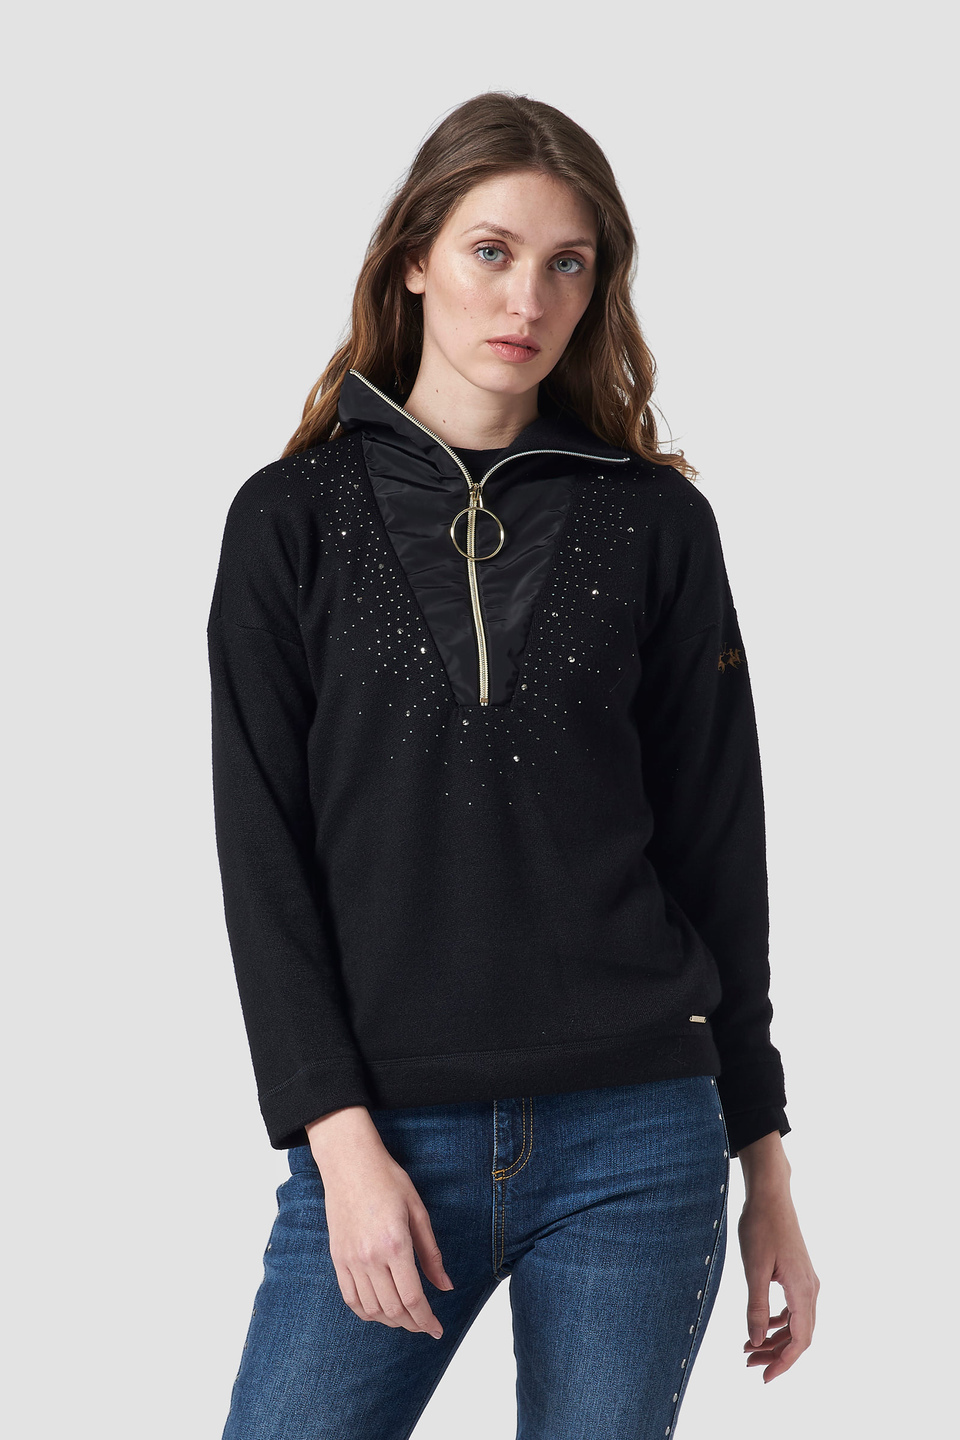 Synthetic fibre high-neck sweatshirt - La Martina - Official Online Shop